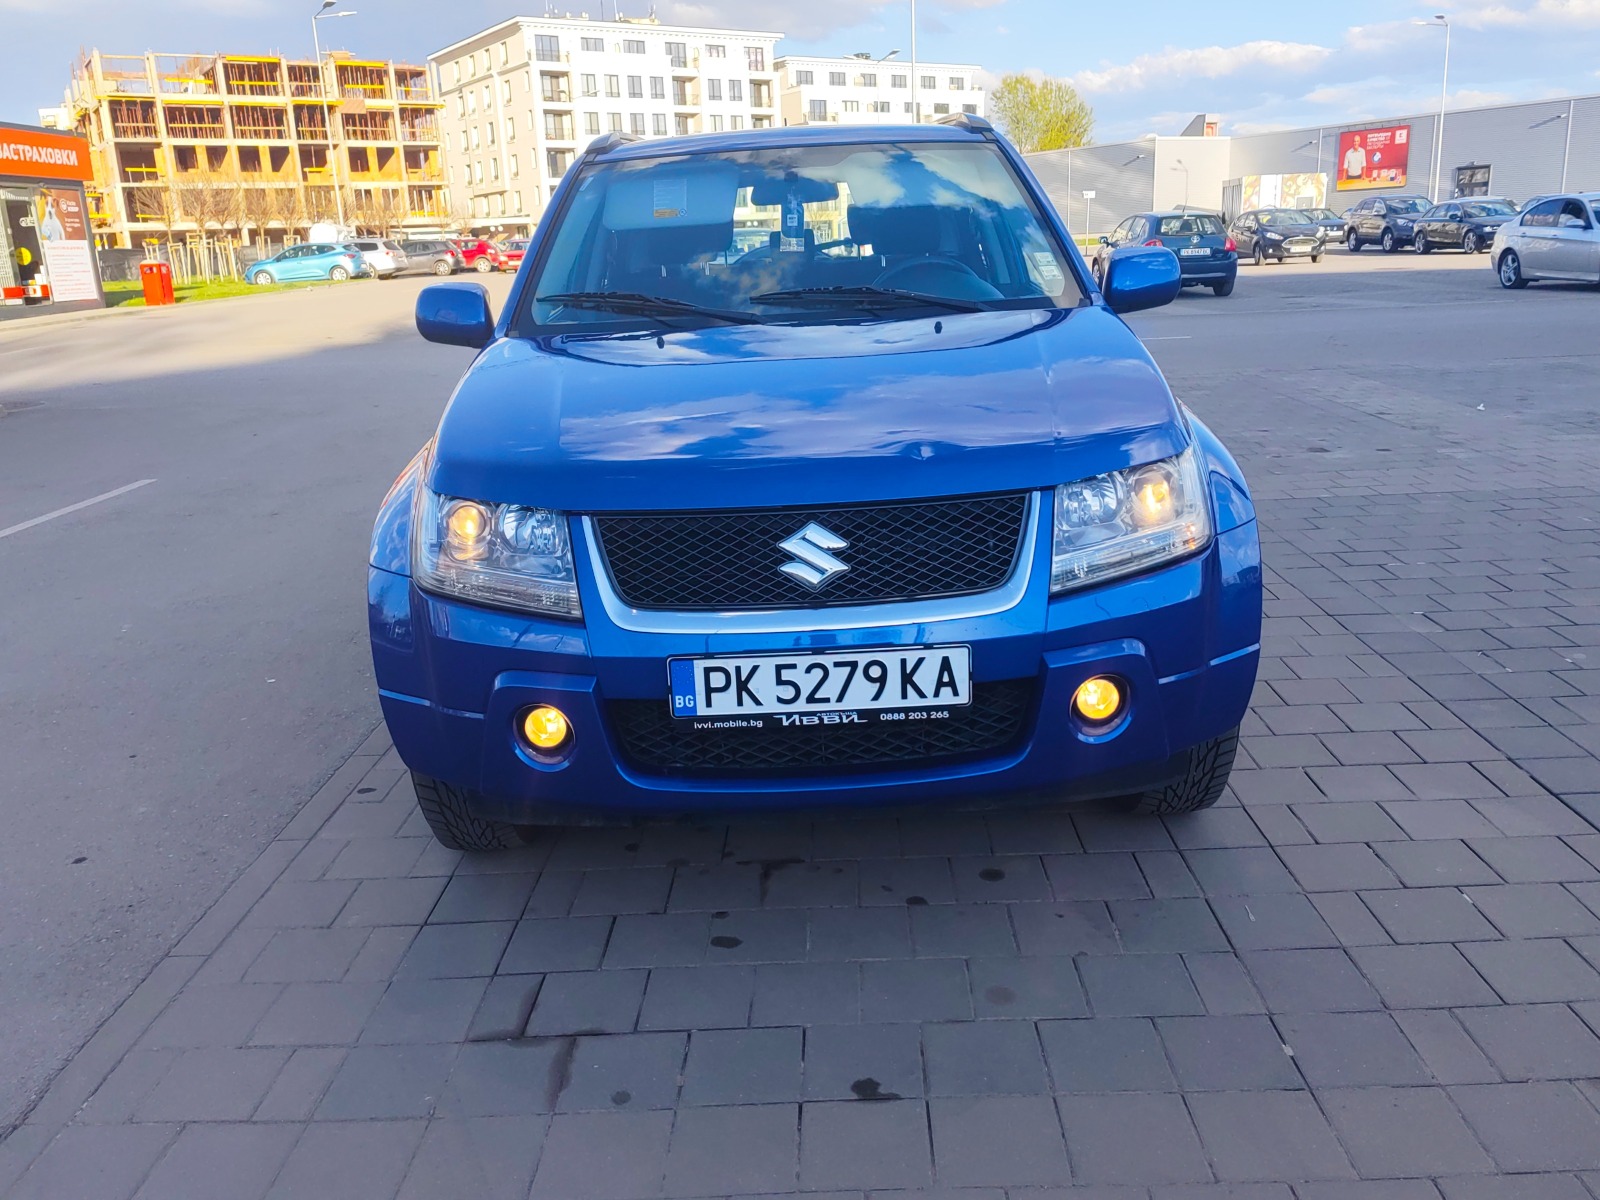 Suzuki Grand vitara  - изображение 1